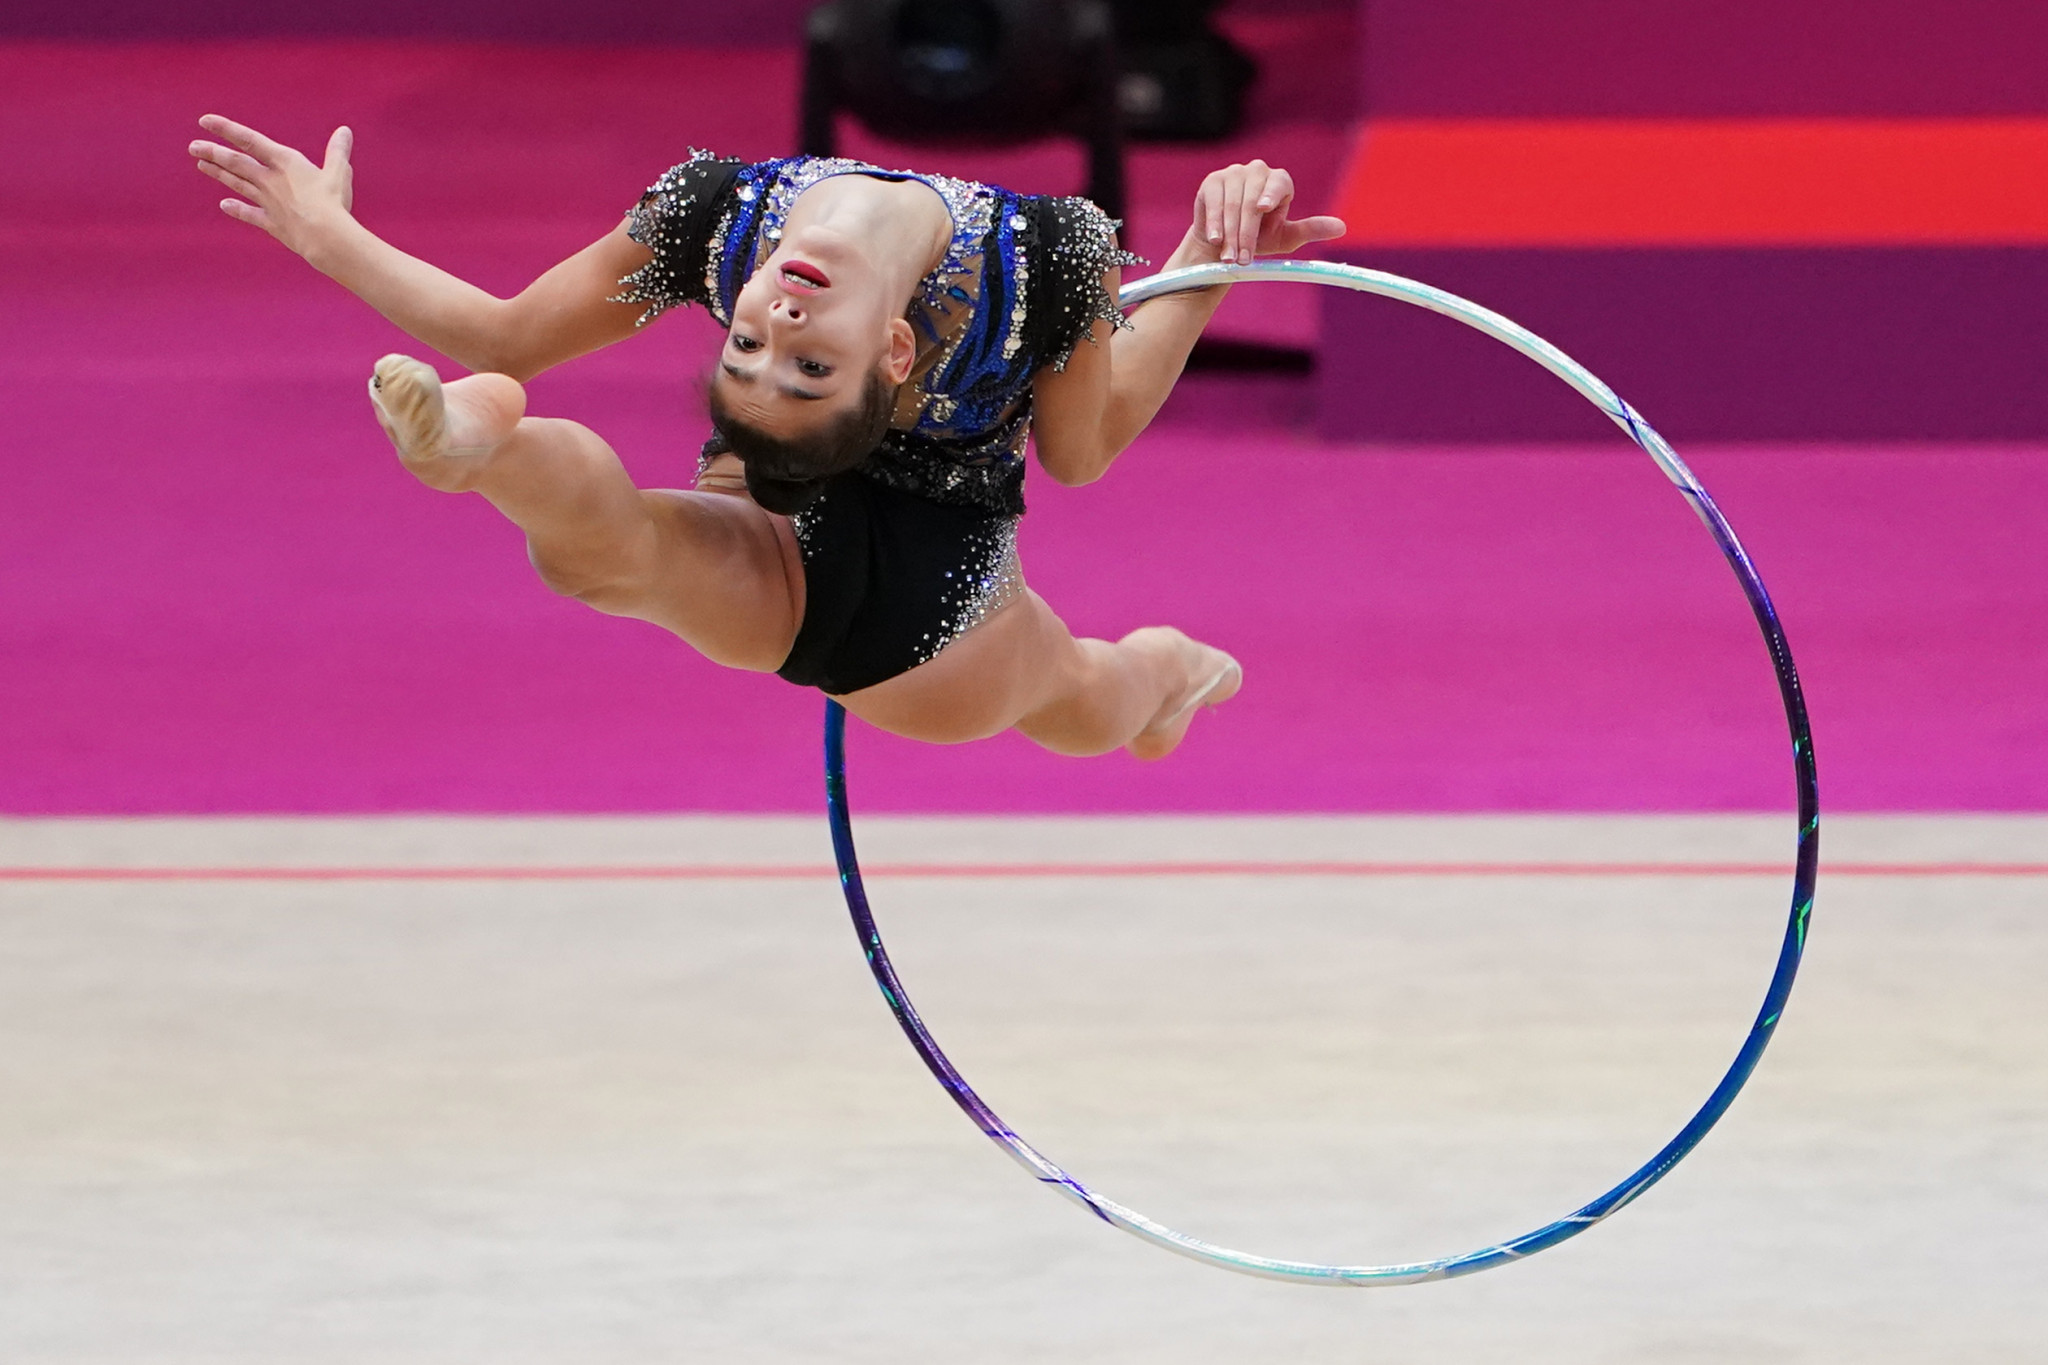 Raffaeli and Kaleyn lead at penultimate Rhythmic Gymnastics World Cup in Baku